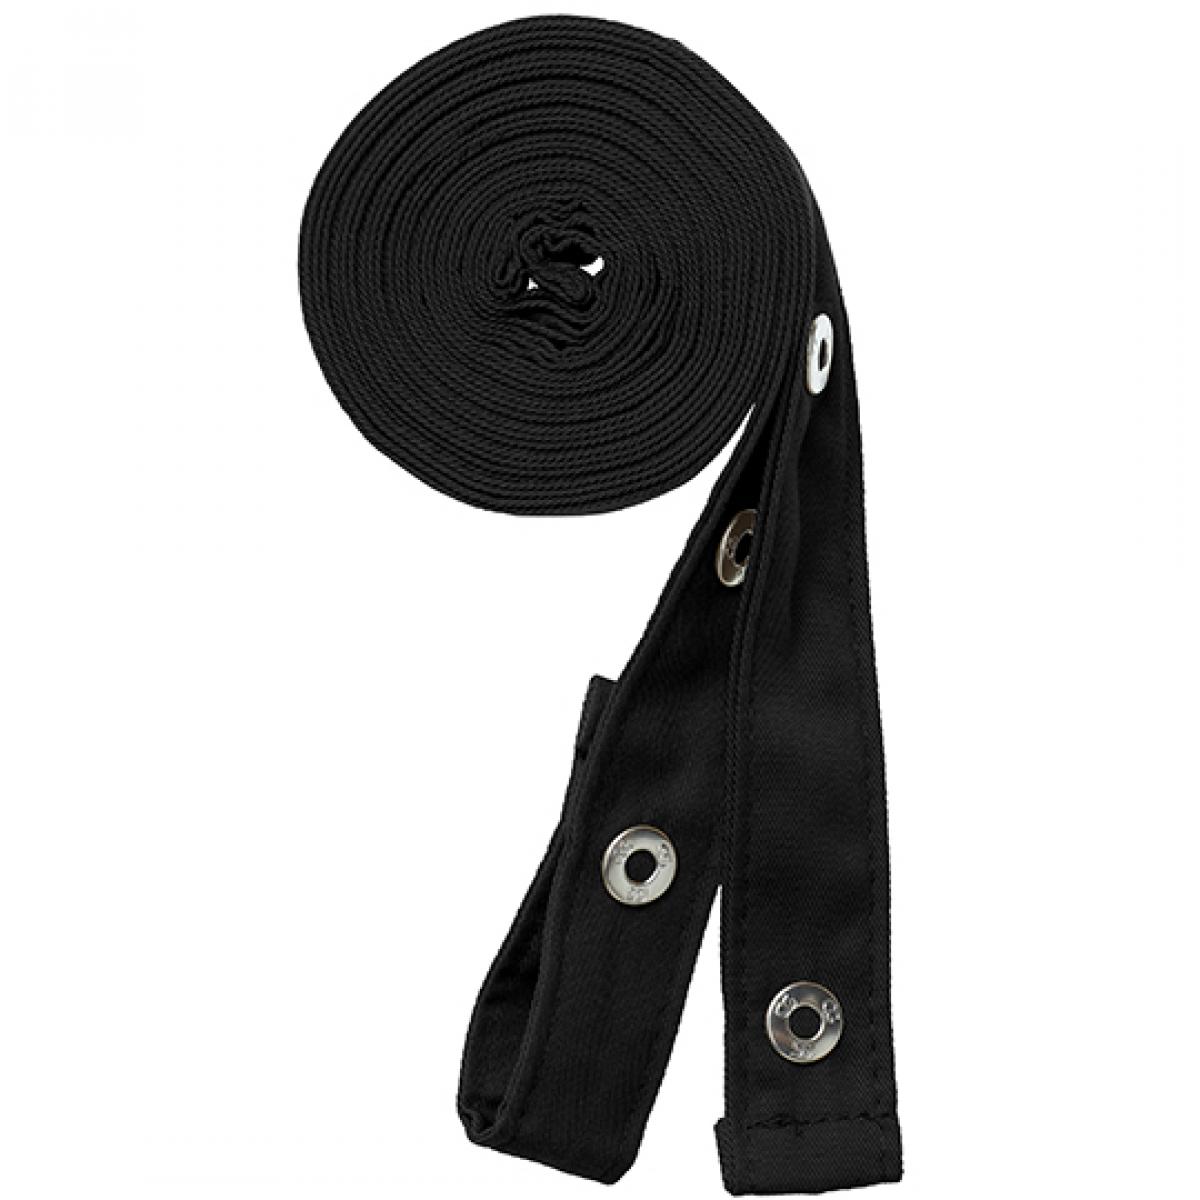 Hersteller: CG Workwear Herstellernummer: 42128 Artikelbezeichnung: Pizzone Classic Strap Set Druckknopf Farbe: Black